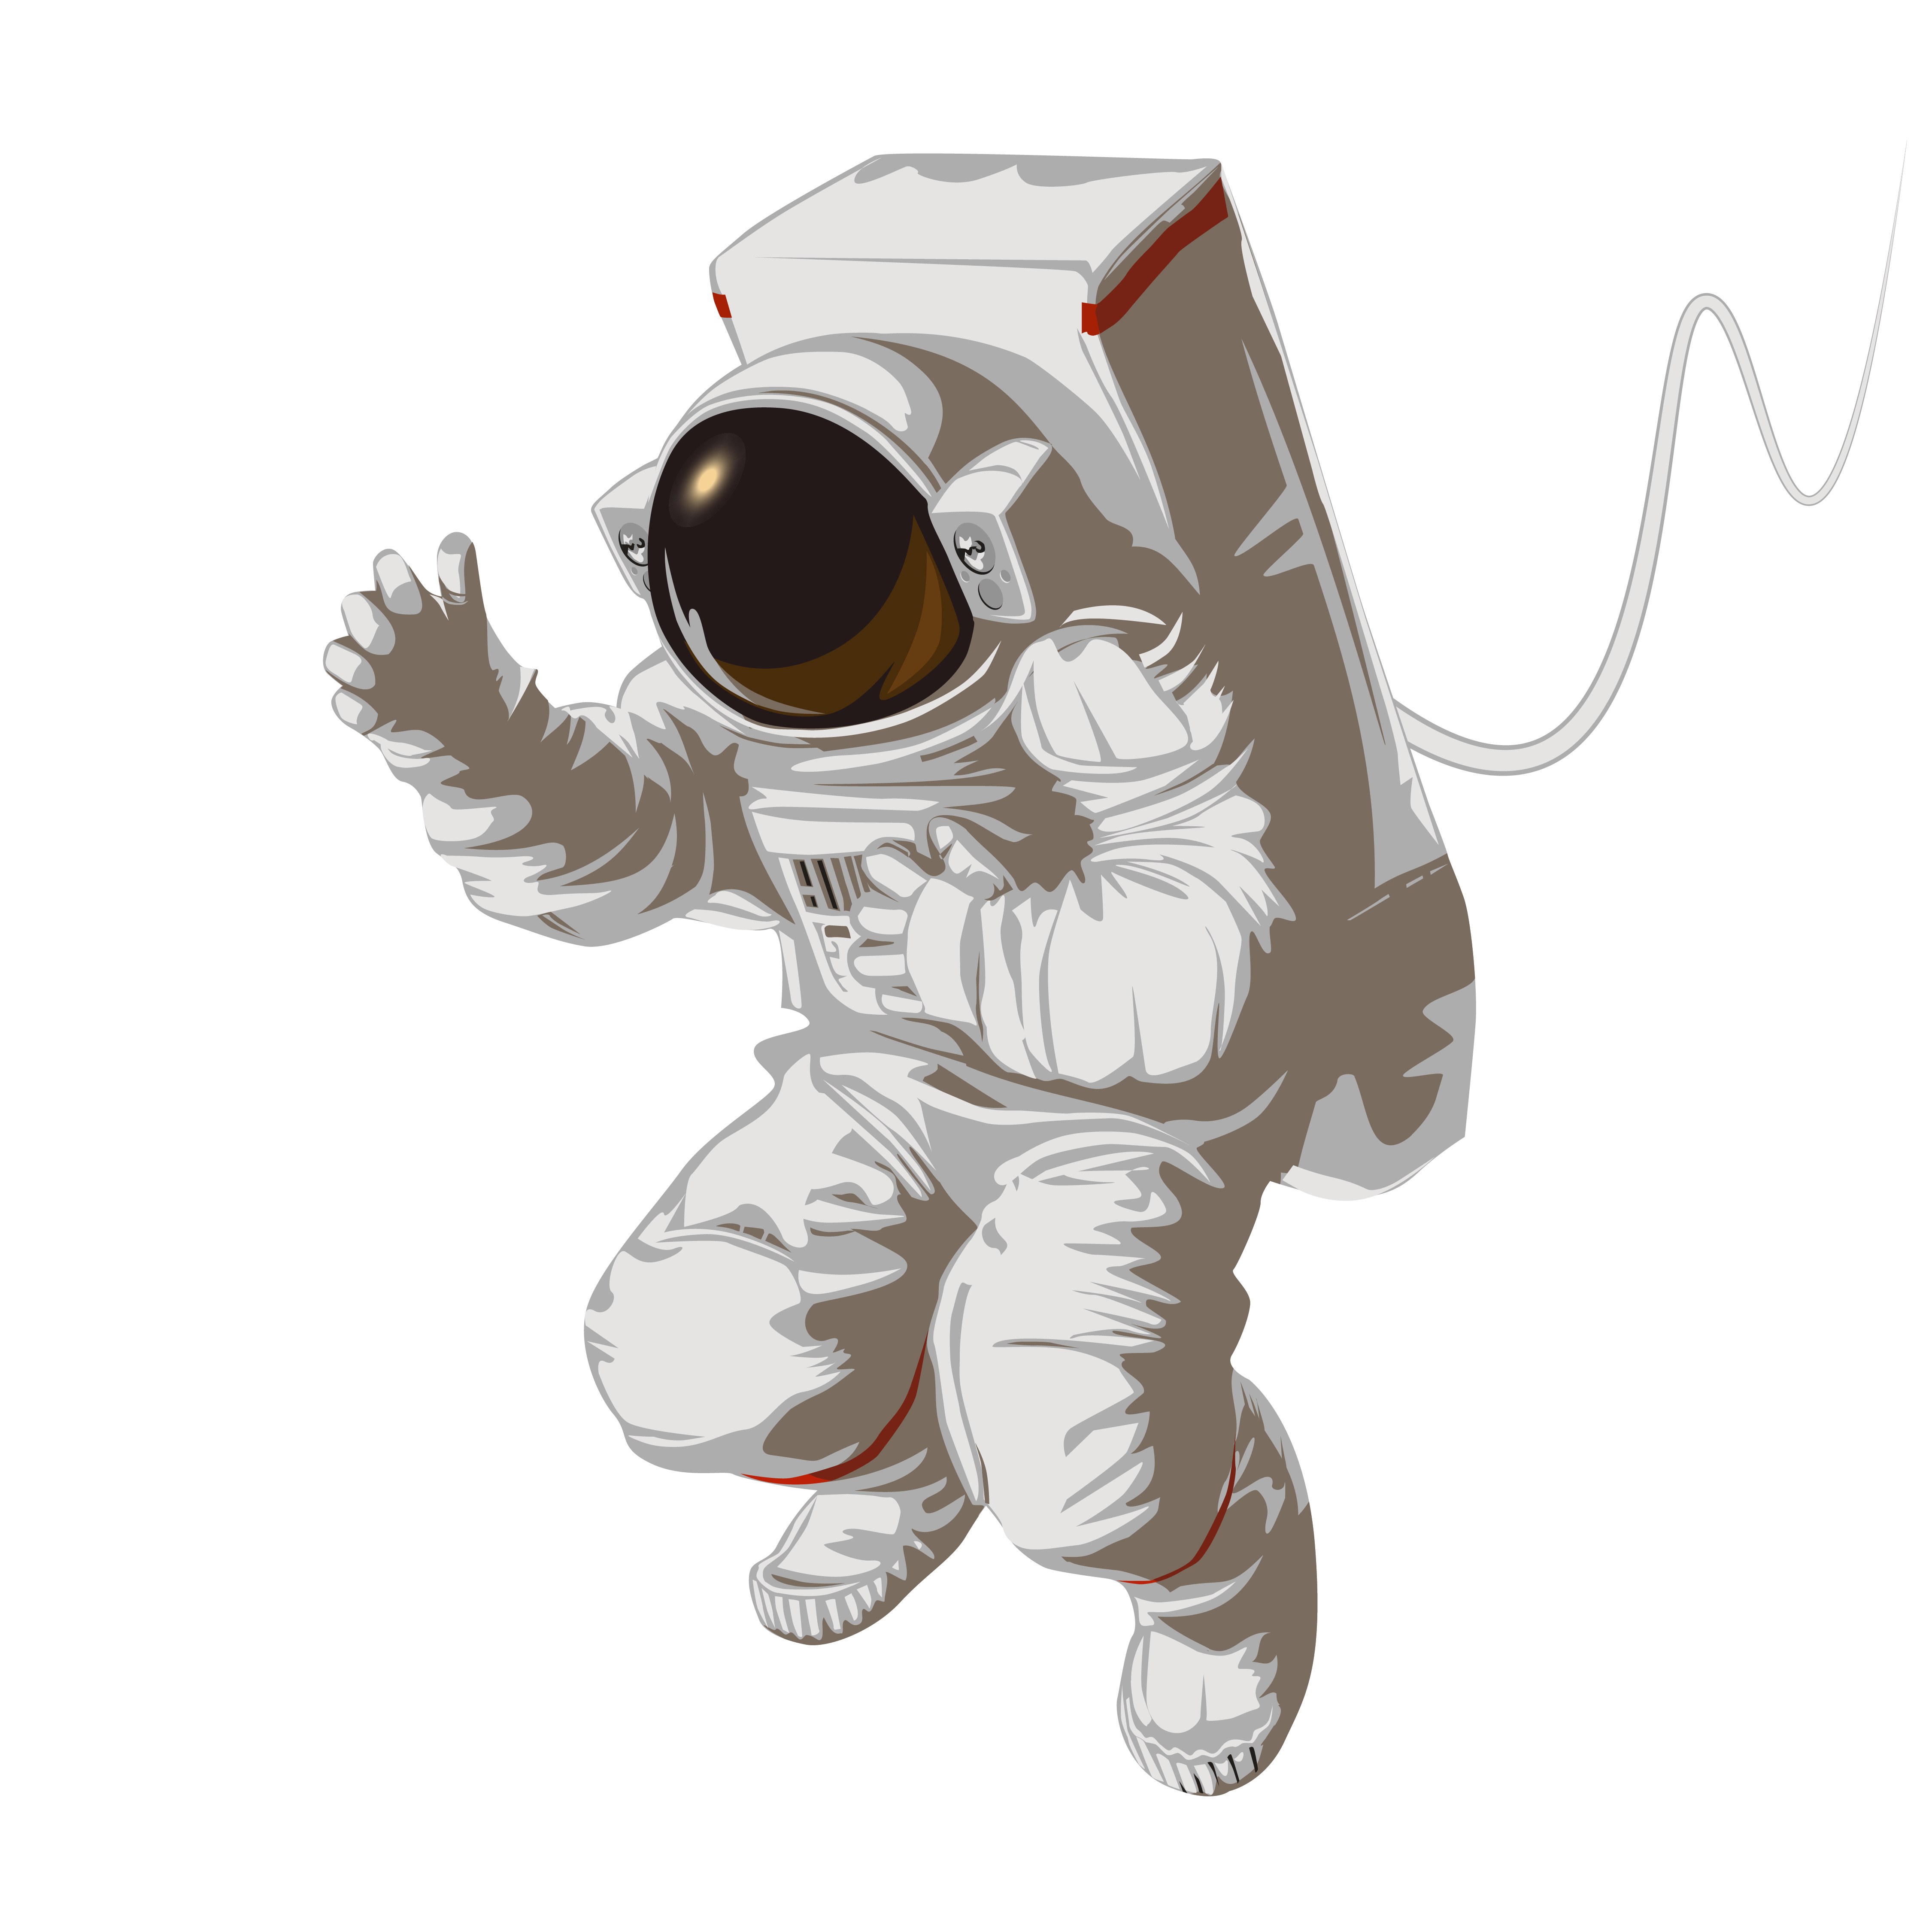 Astronaut_in_spacesuit